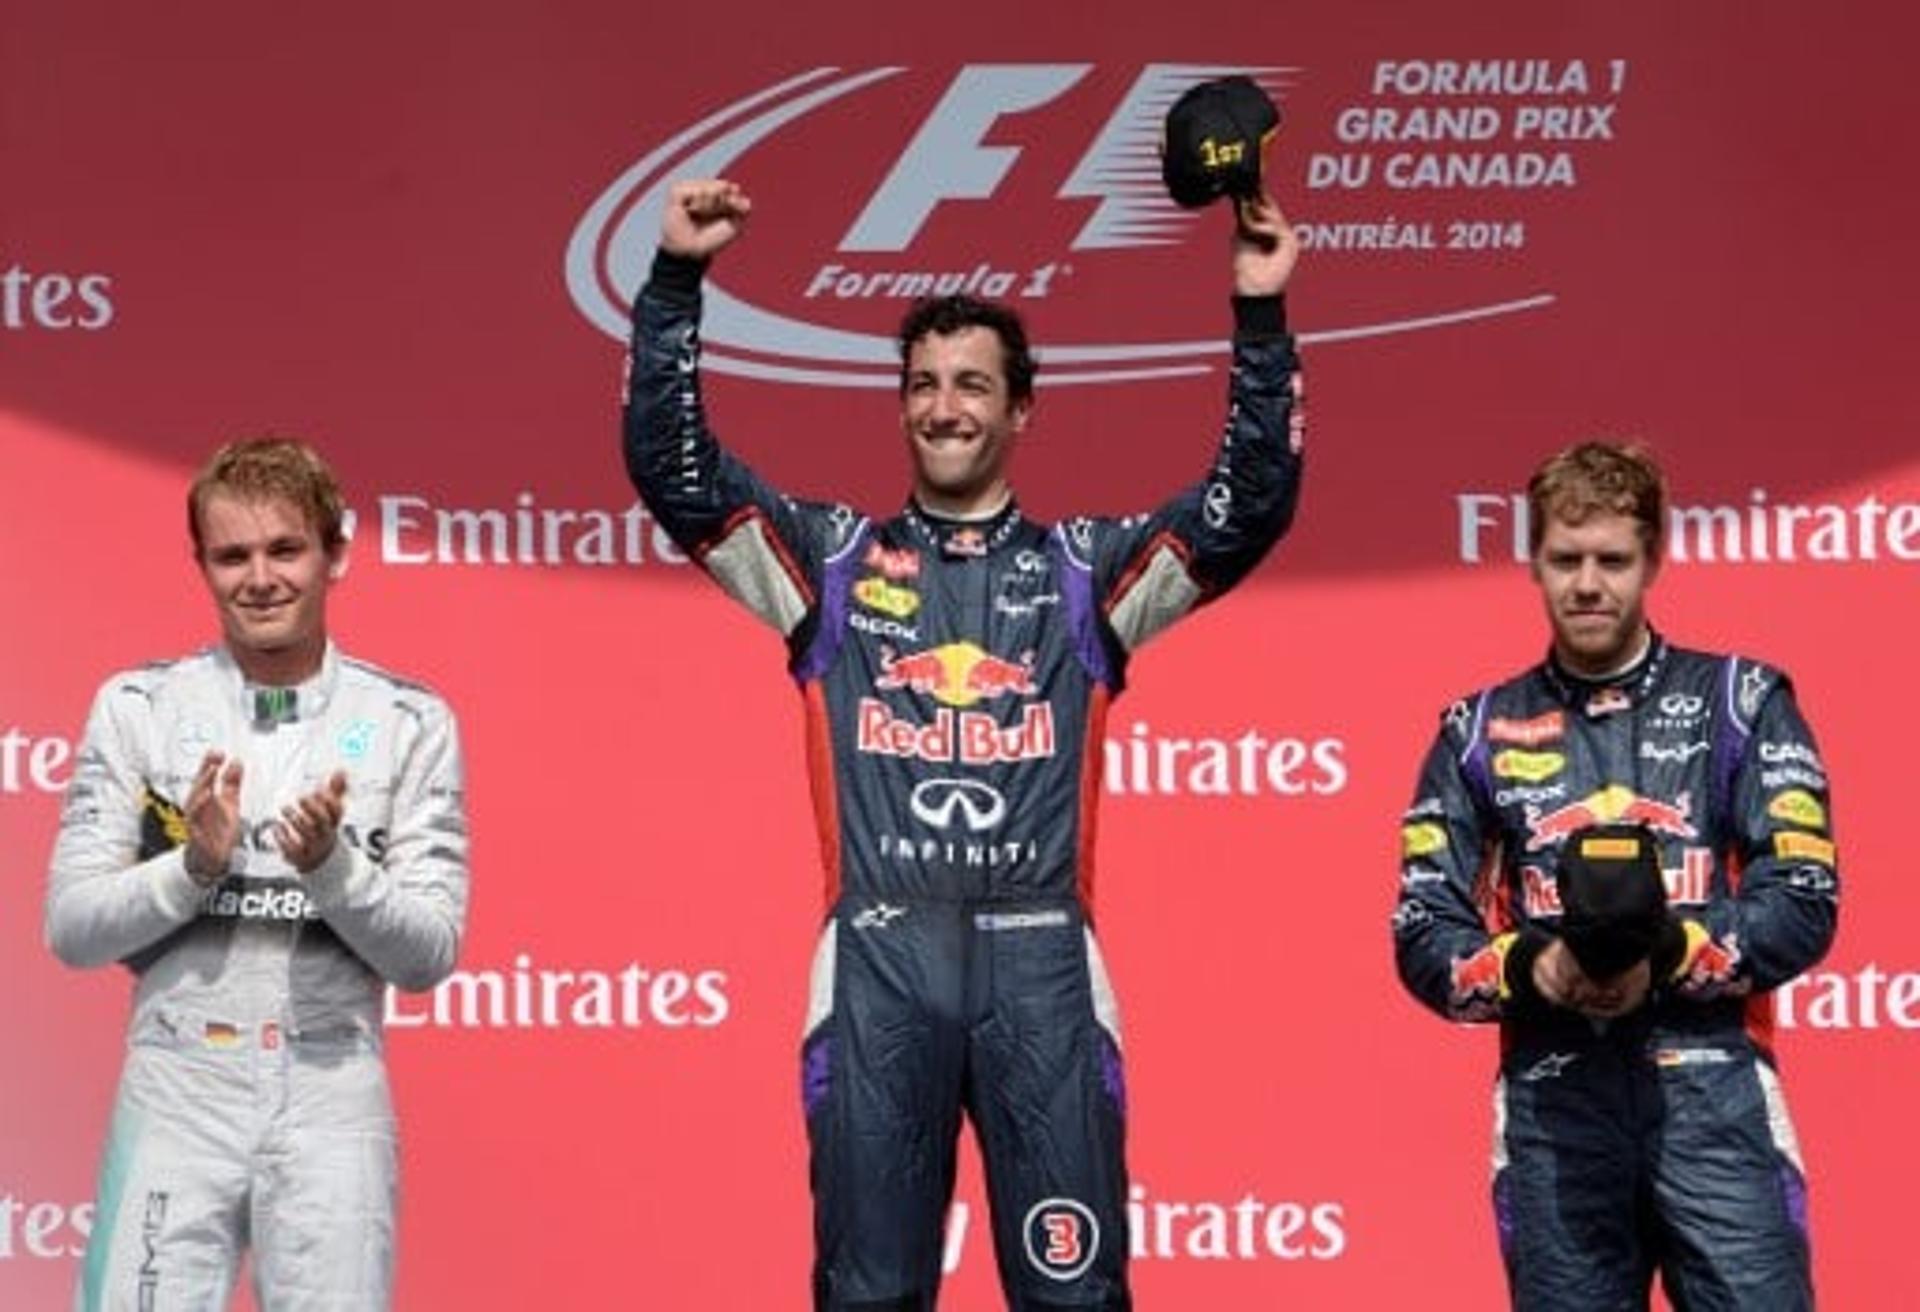 Ricciardo, Rosberg e Vettel subiram ao pódio no Canadá (Foto: Stan Honda/AFP)